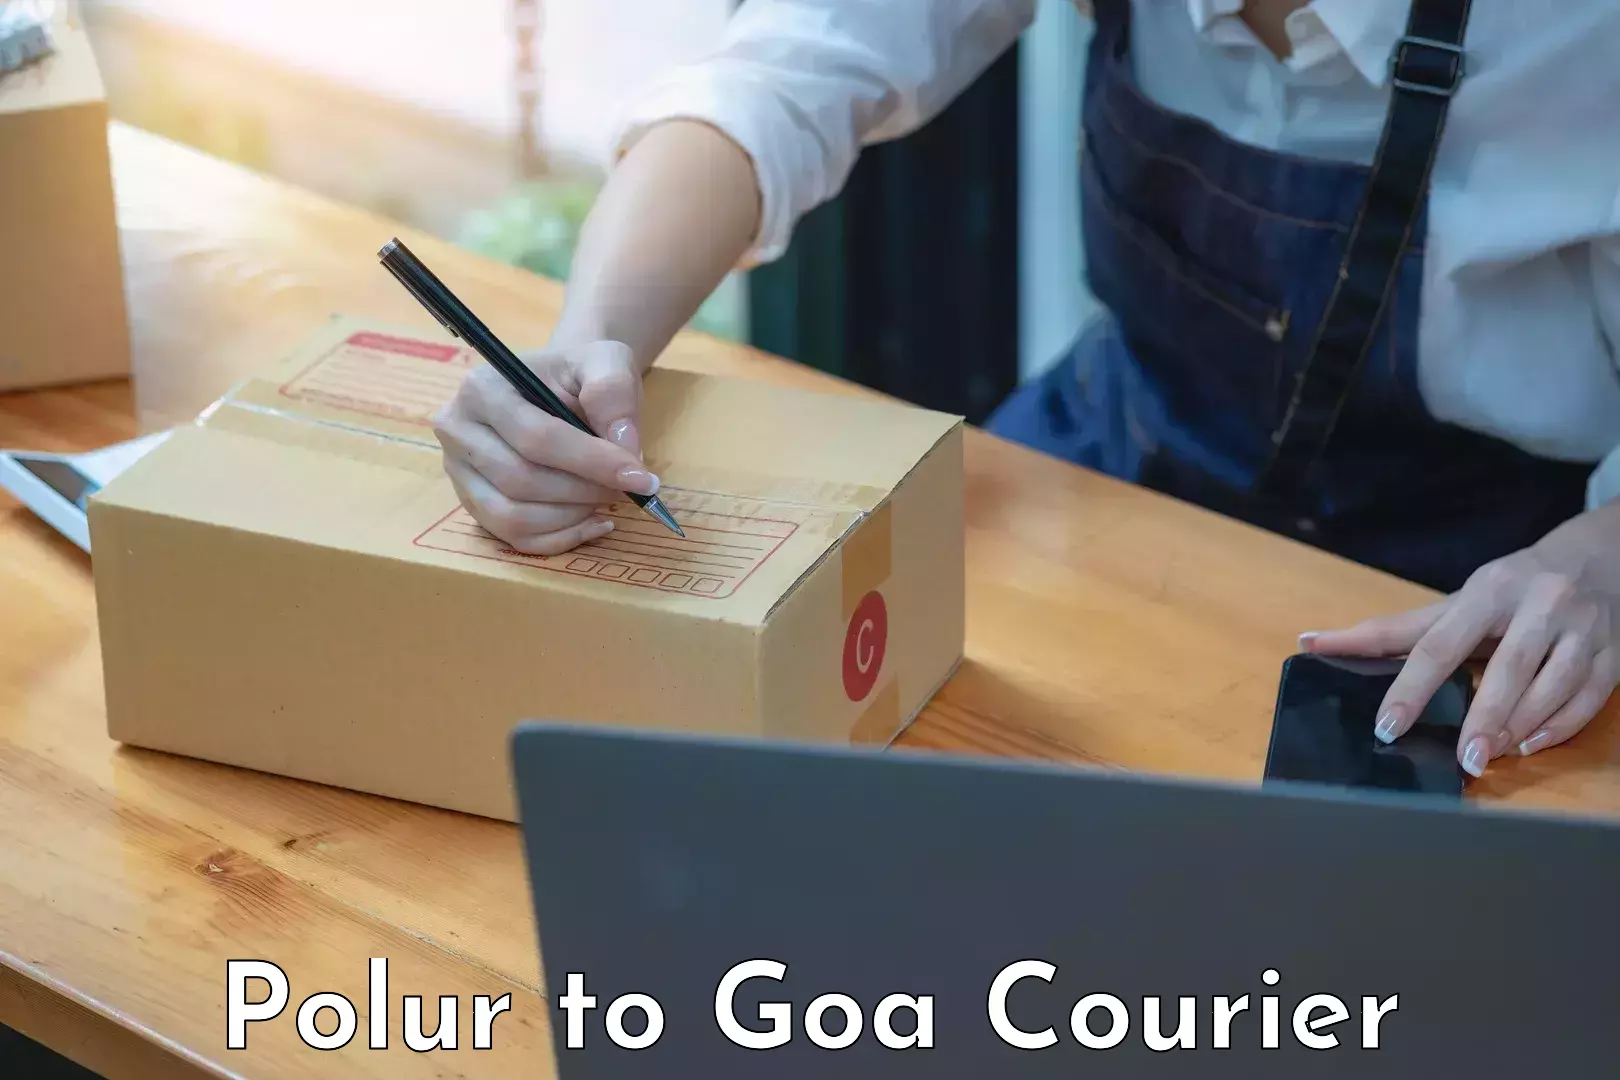 Luggage shipment tracking Polur to Goa